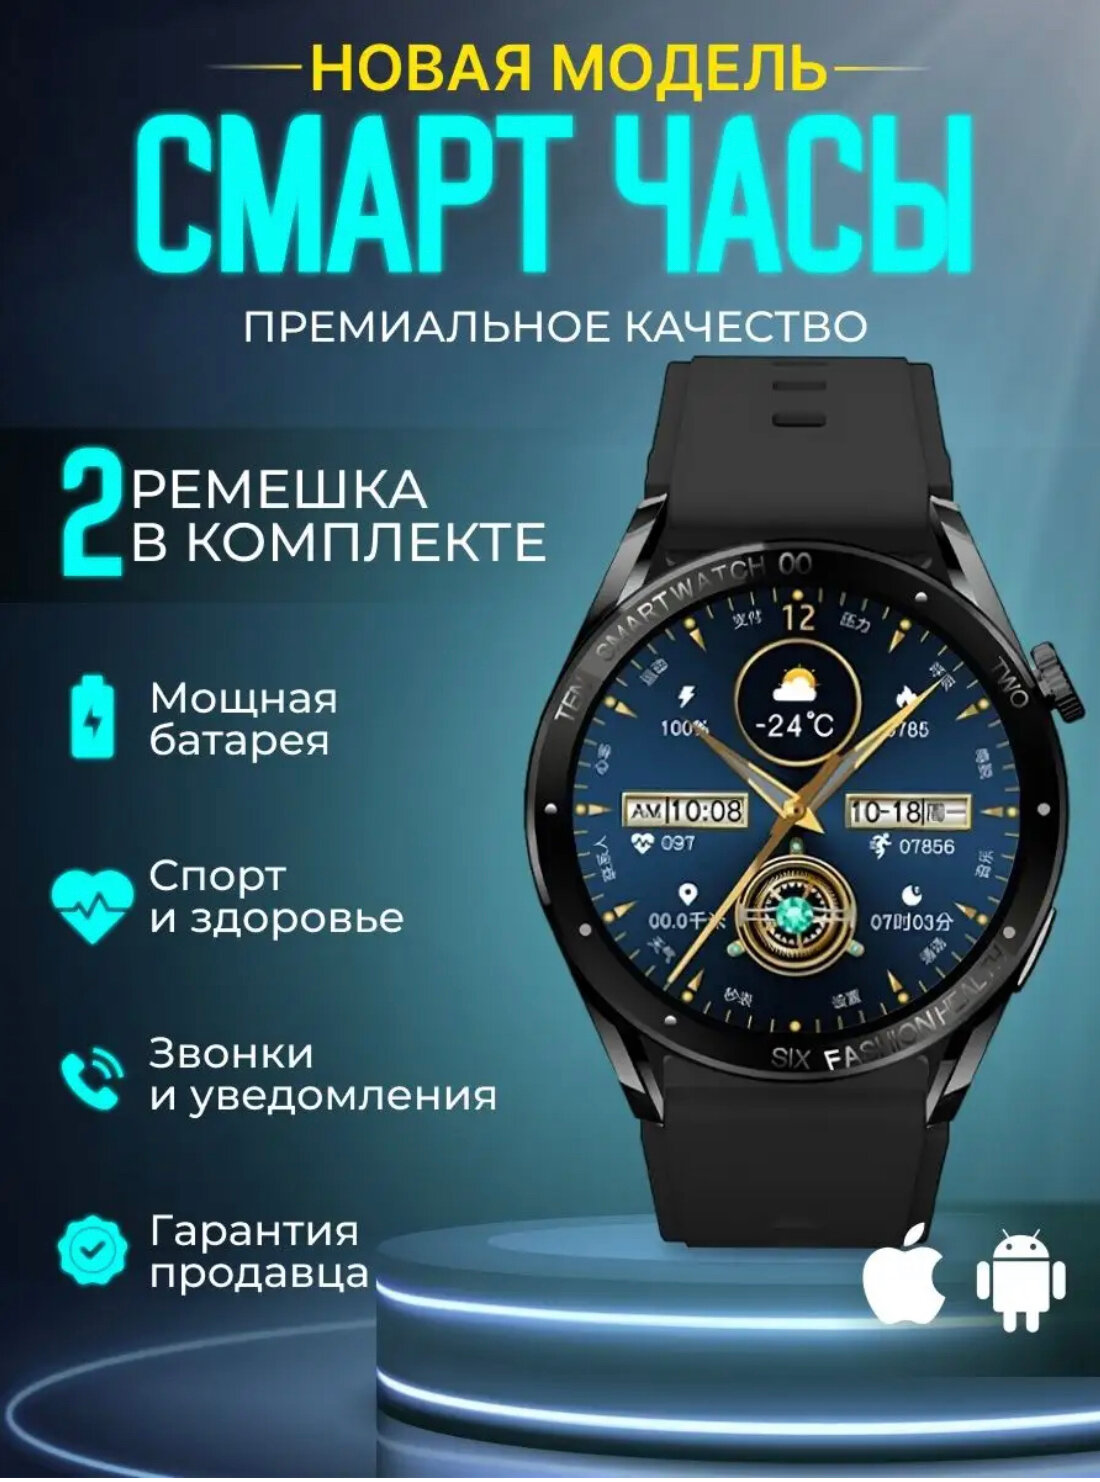 Смарт часы Х1promax 2 ремешка iOS Android, Уведомления, Звонки, черные